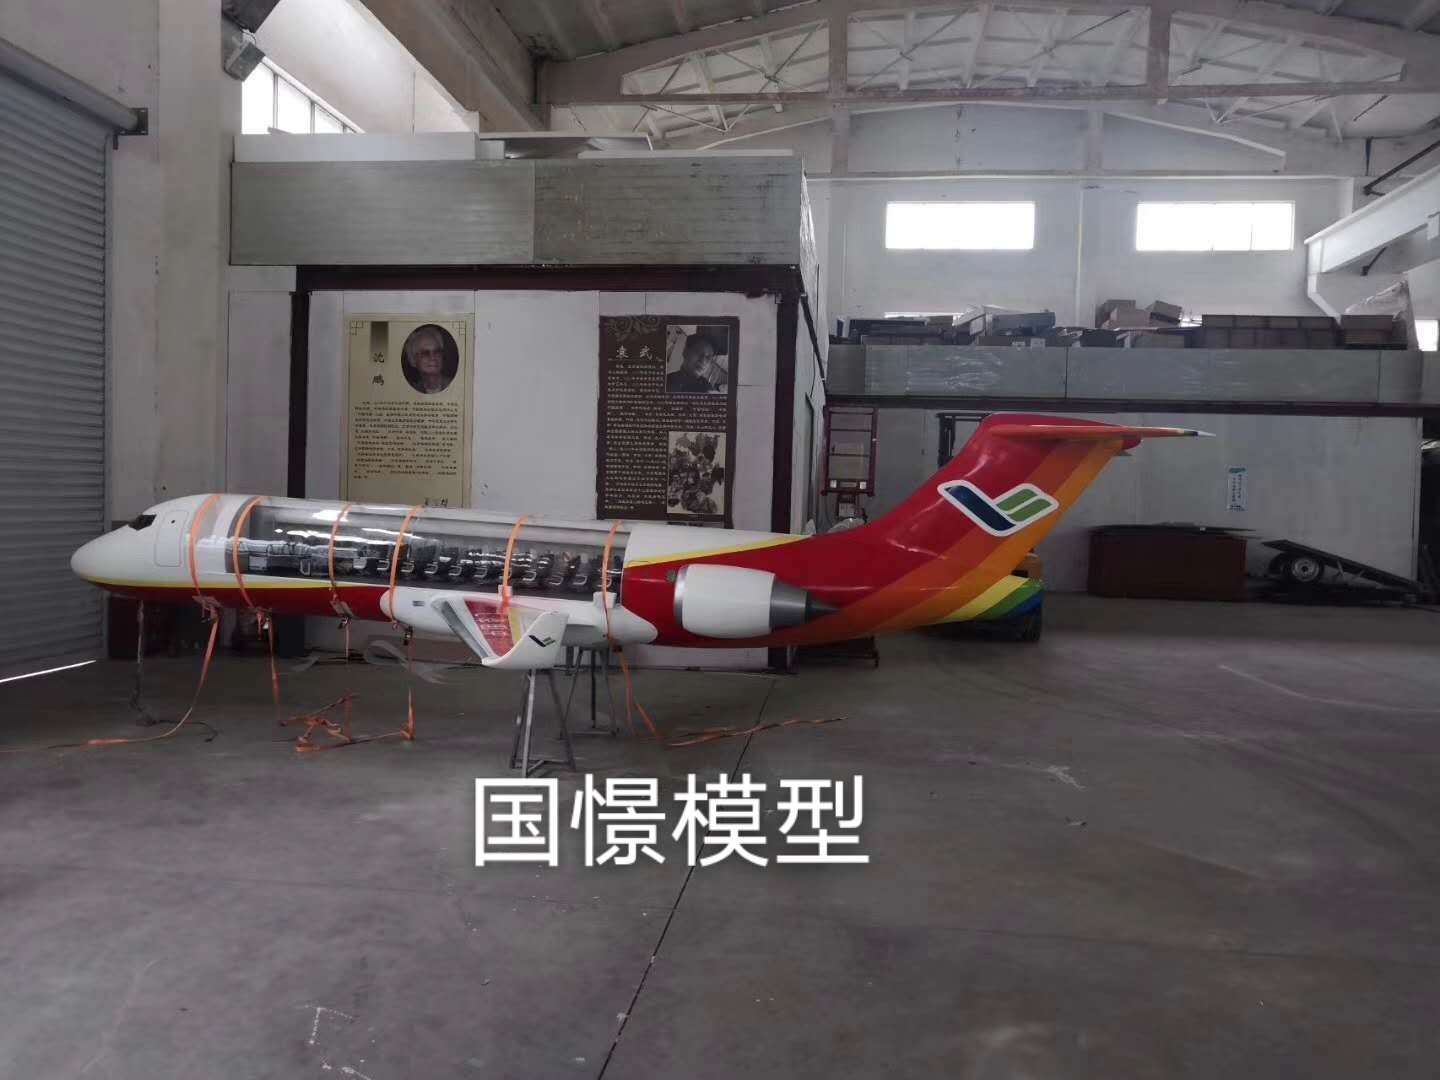 桃源县飞机模型